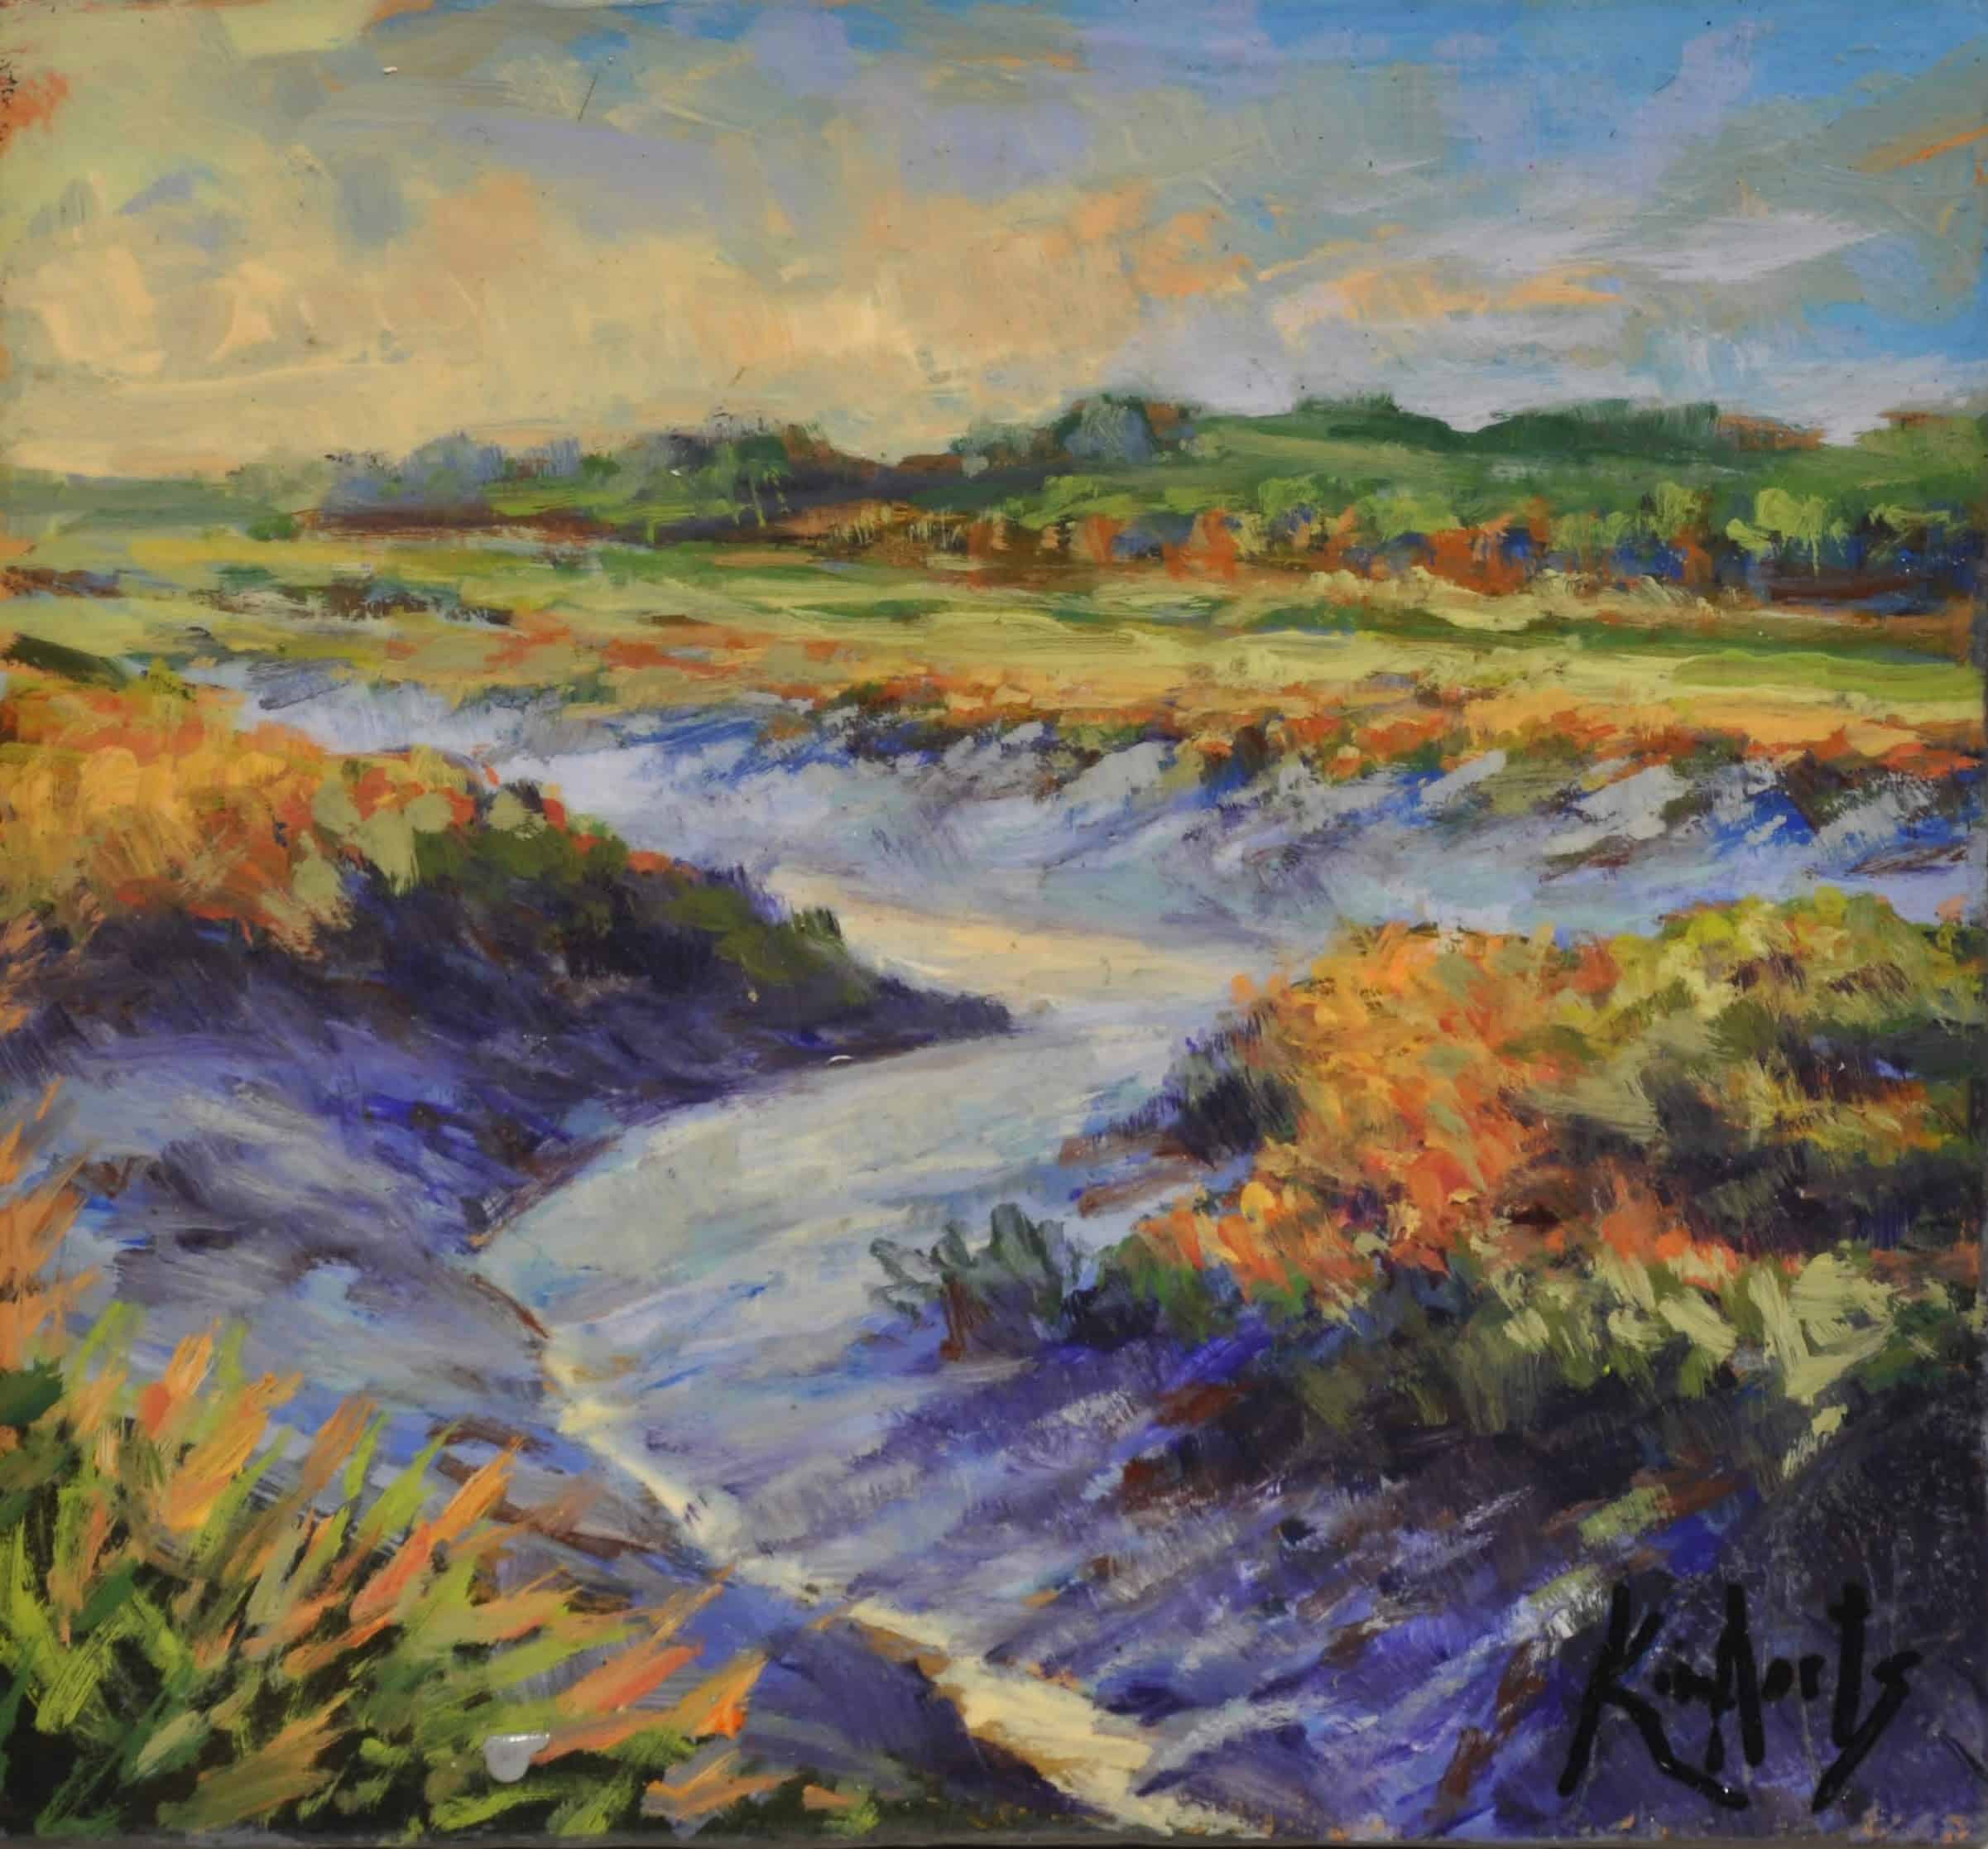 Kim Aerts oil painting - Tidal Bore Tributary, Gaspereau River 4x4